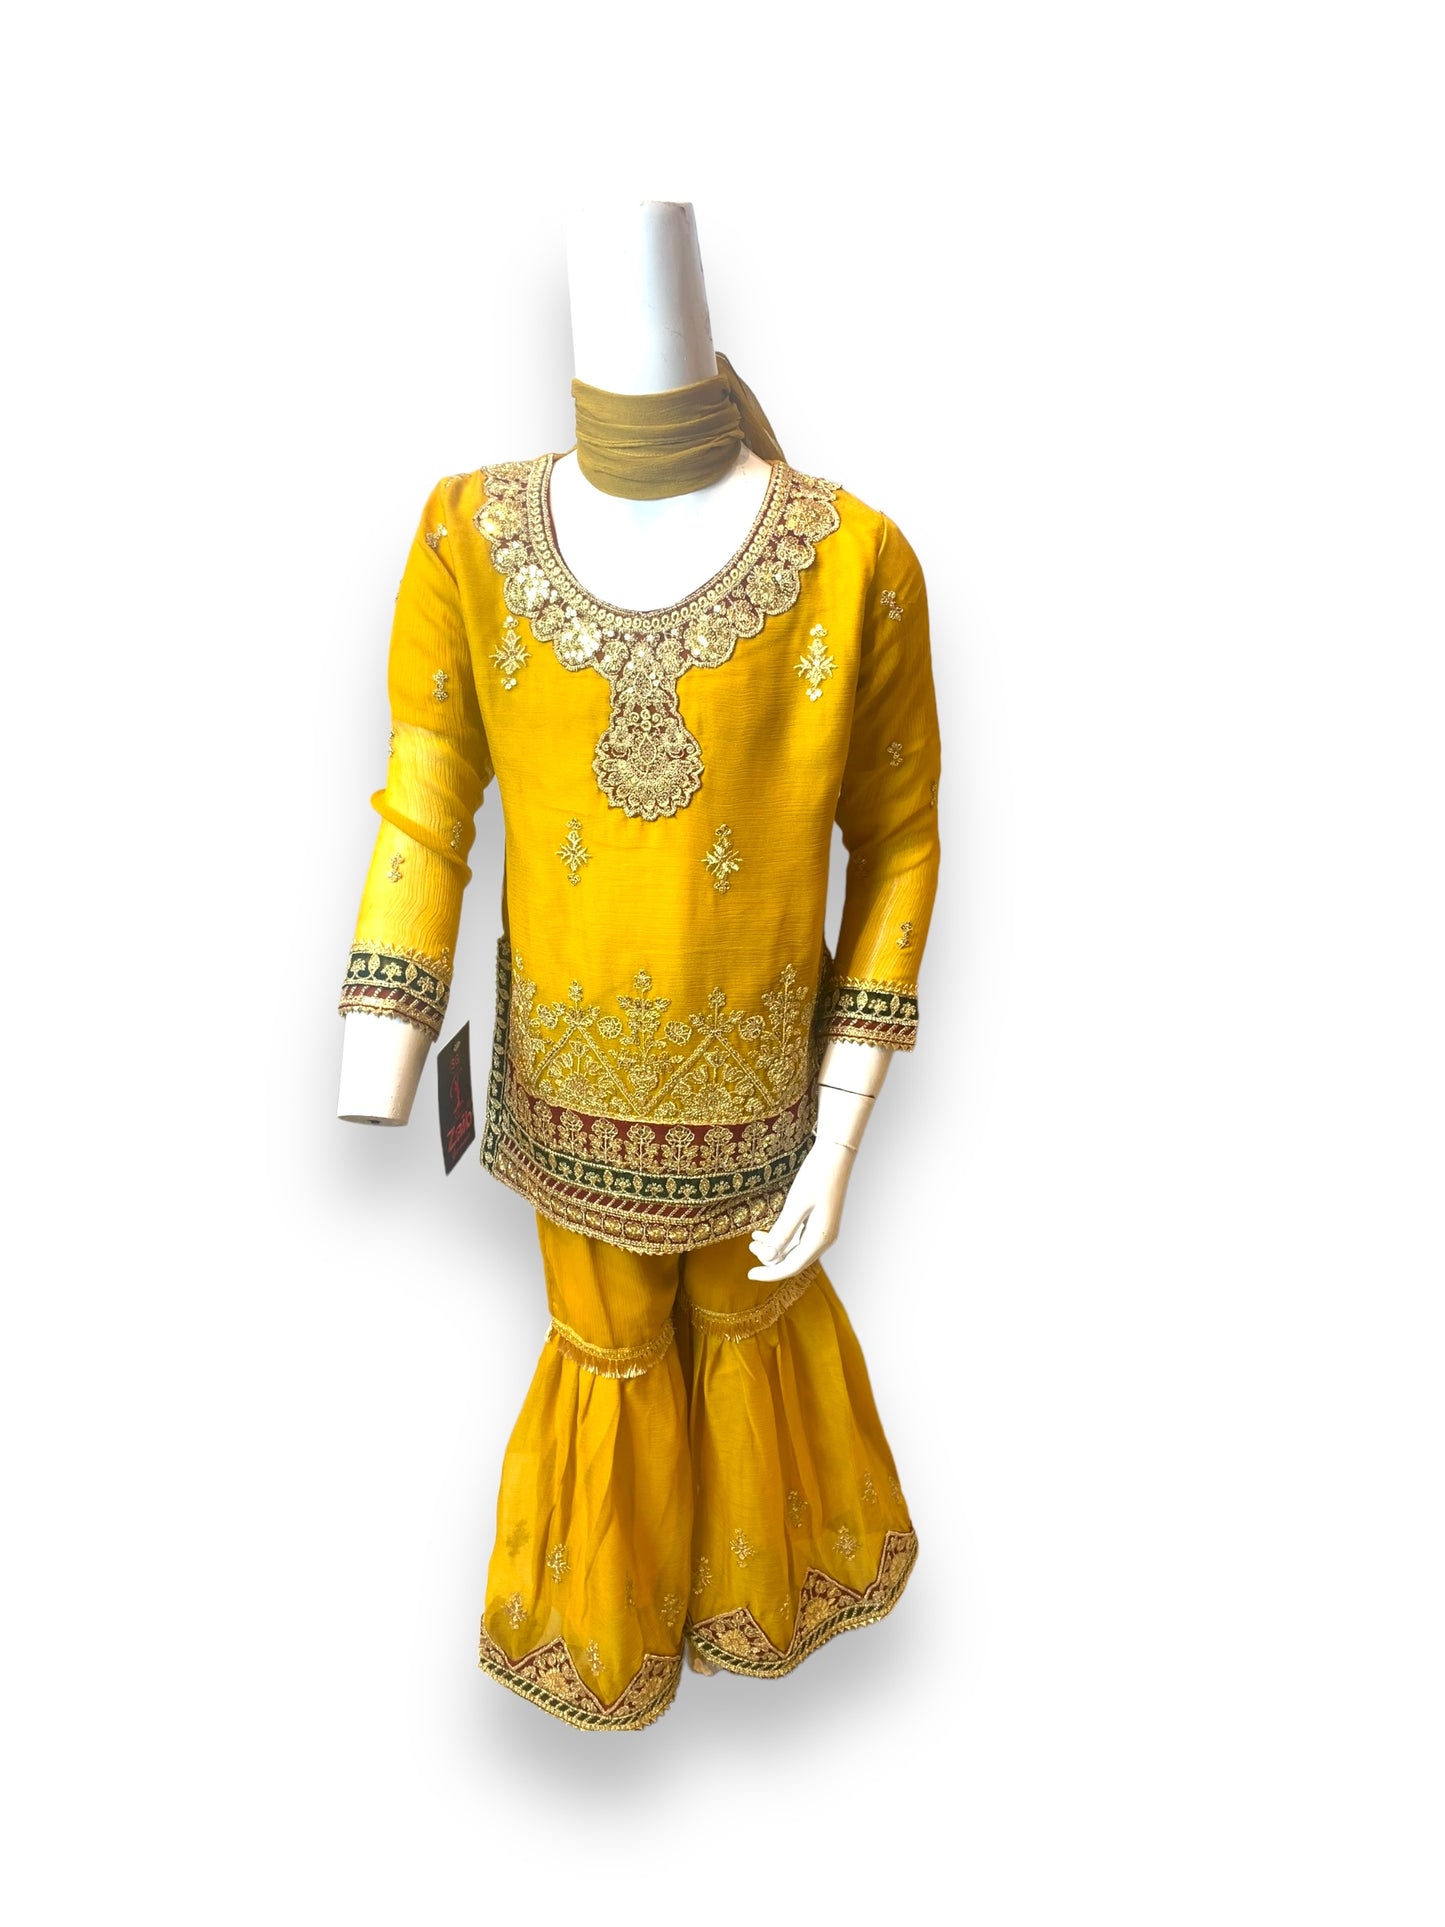 Designer Salwar Kameez for Little Girls - Elegant & Stylish Ethnic Wear-006